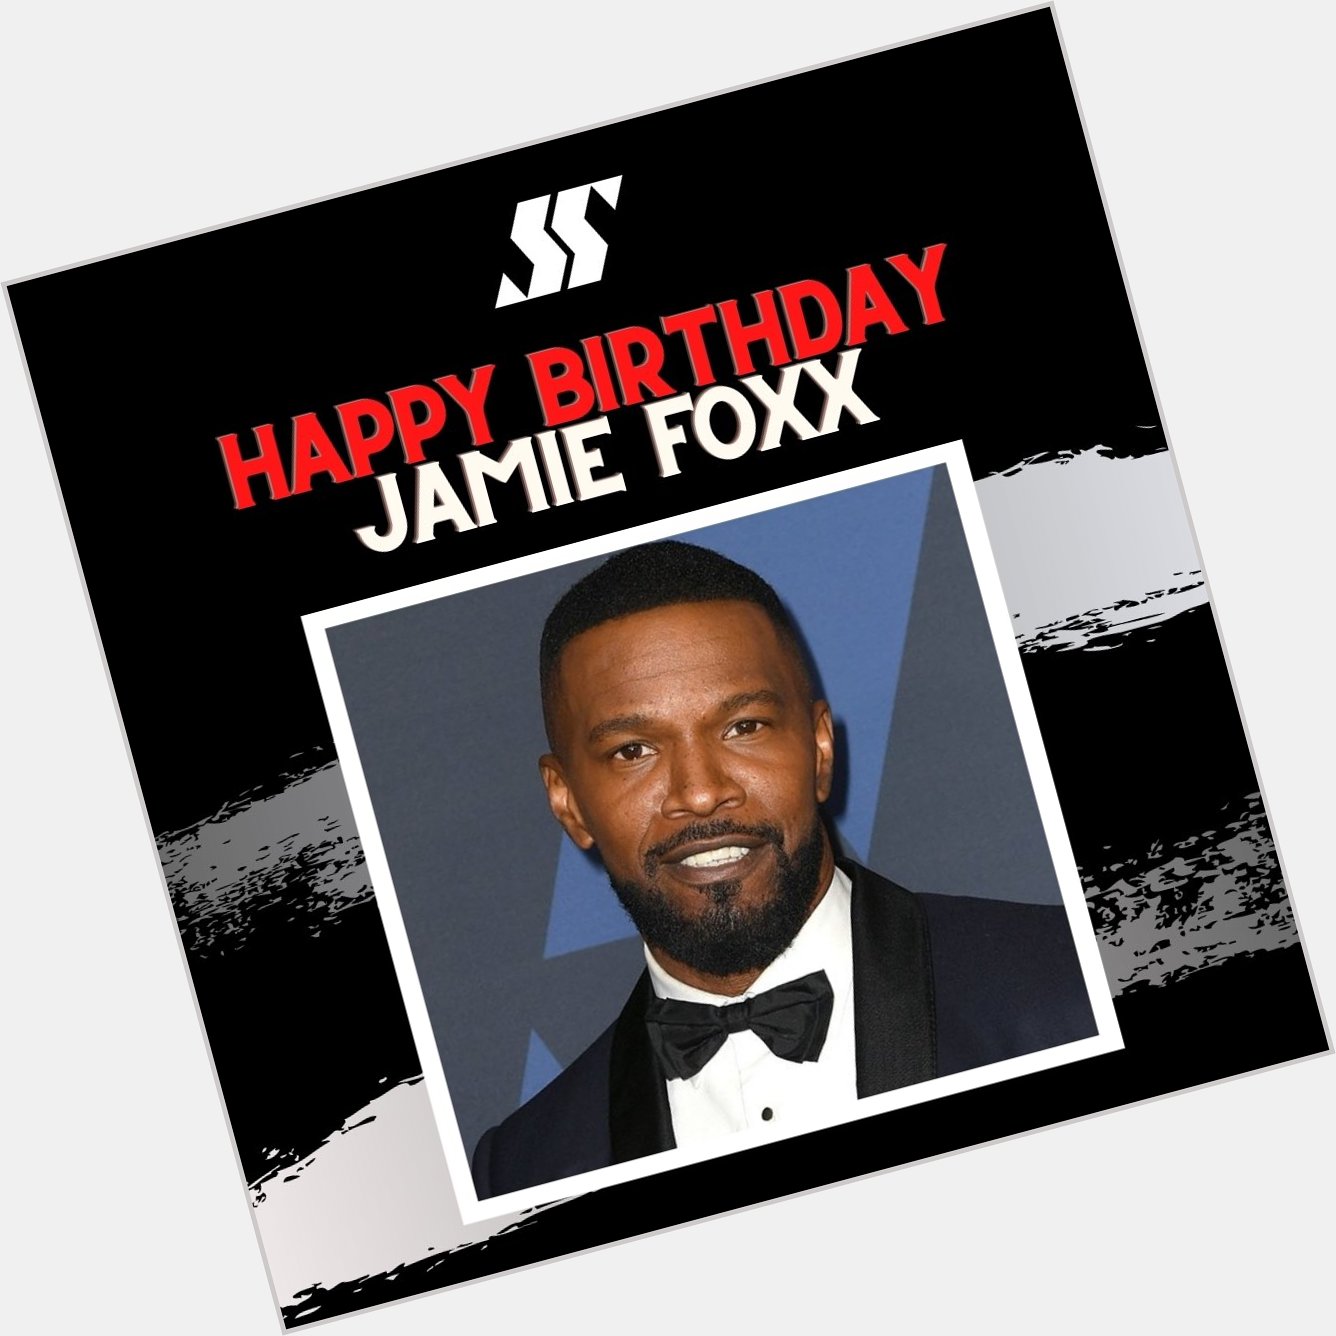 Happy birthday Jamie Foxx   